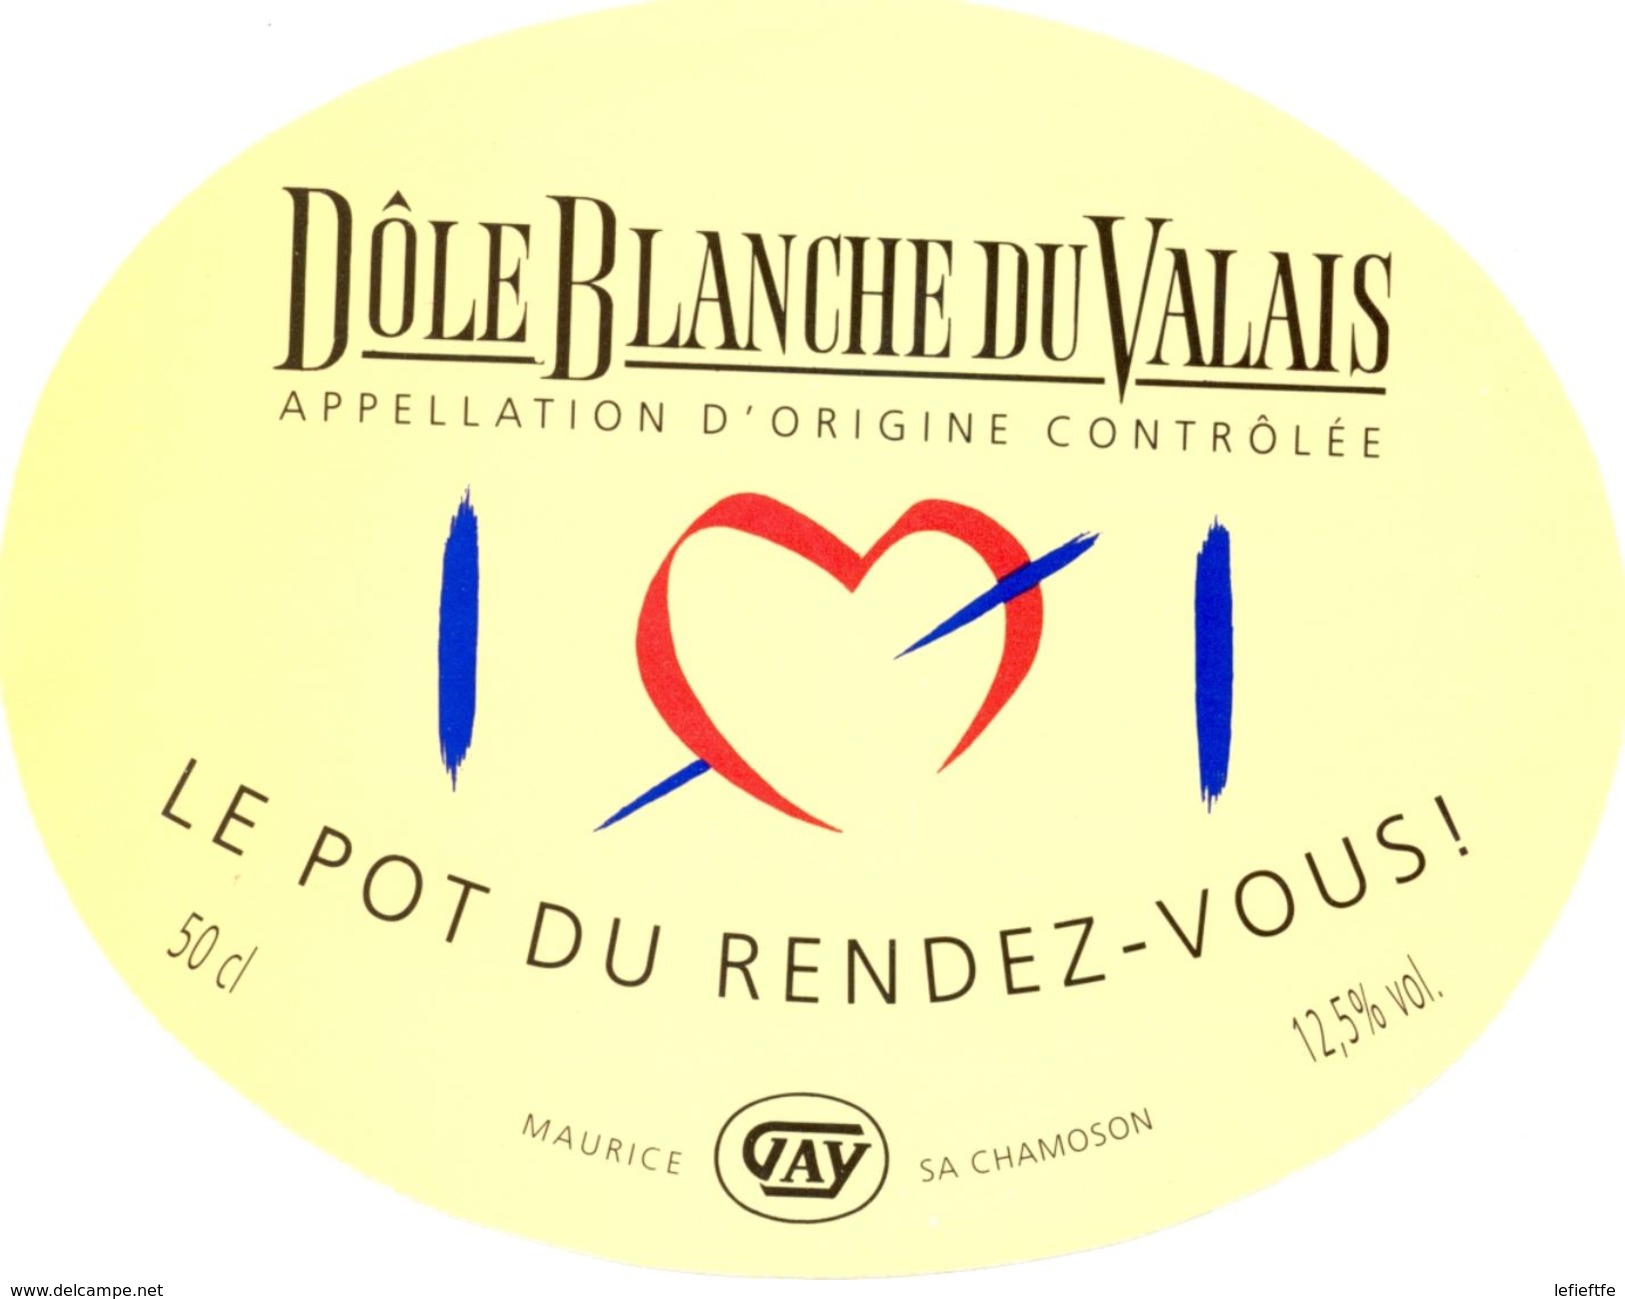 1509 - Suisse - Le Pot Du Rendez-Vous - Dôle Blanche Du Valais - A.O.C.  Maurice Gay - Chamoson - White Wines